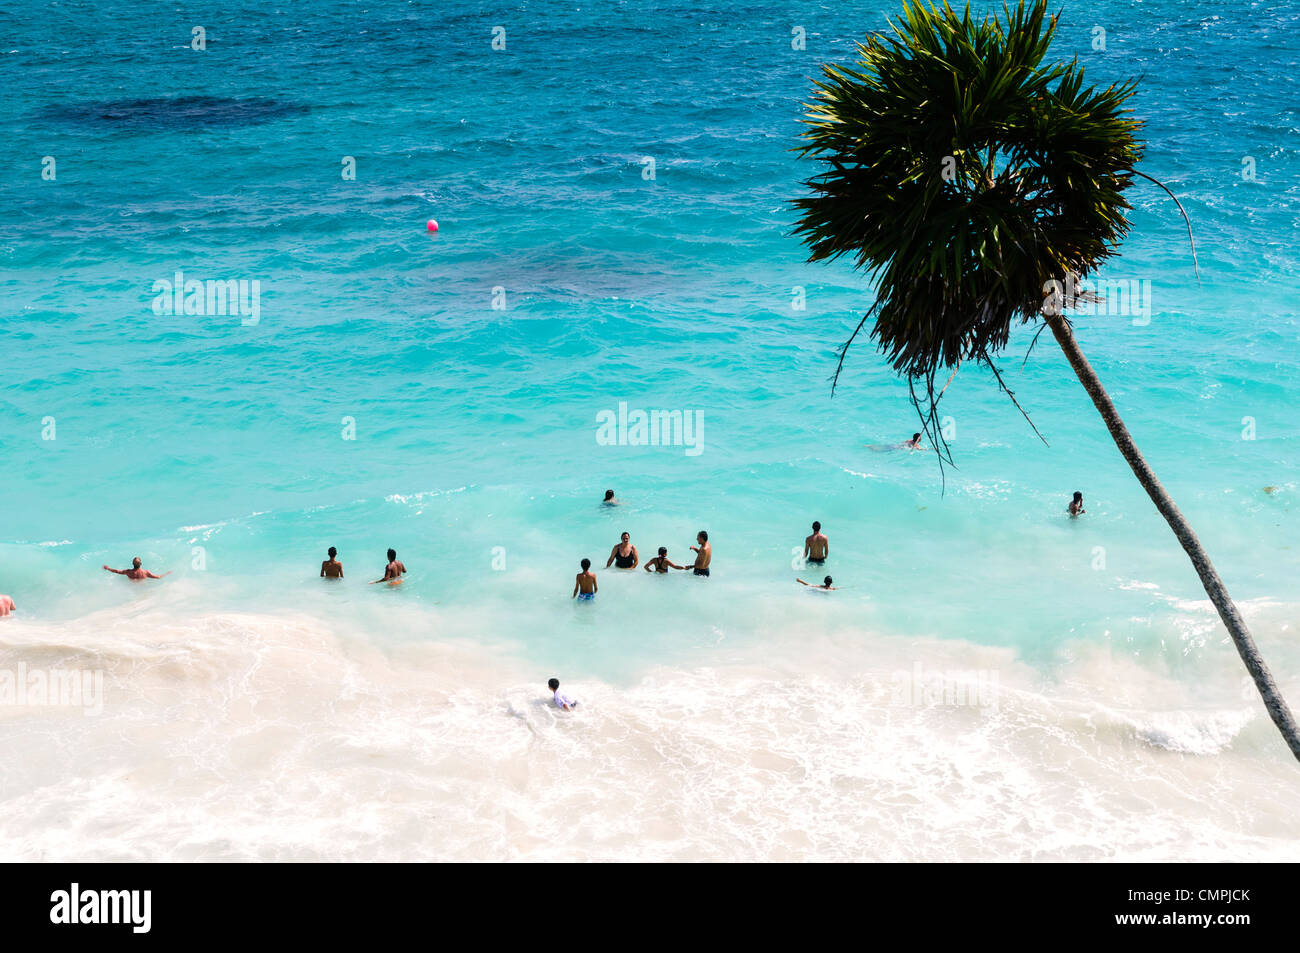 TULUM, Messico - Persone nuotare nel mare dei Caraibi da una delle splendide spiagge accanto alla civiltà Maya rovine di Tulum sulla costa orientale della penisola dello Yucatan del Messico. Foto Stock